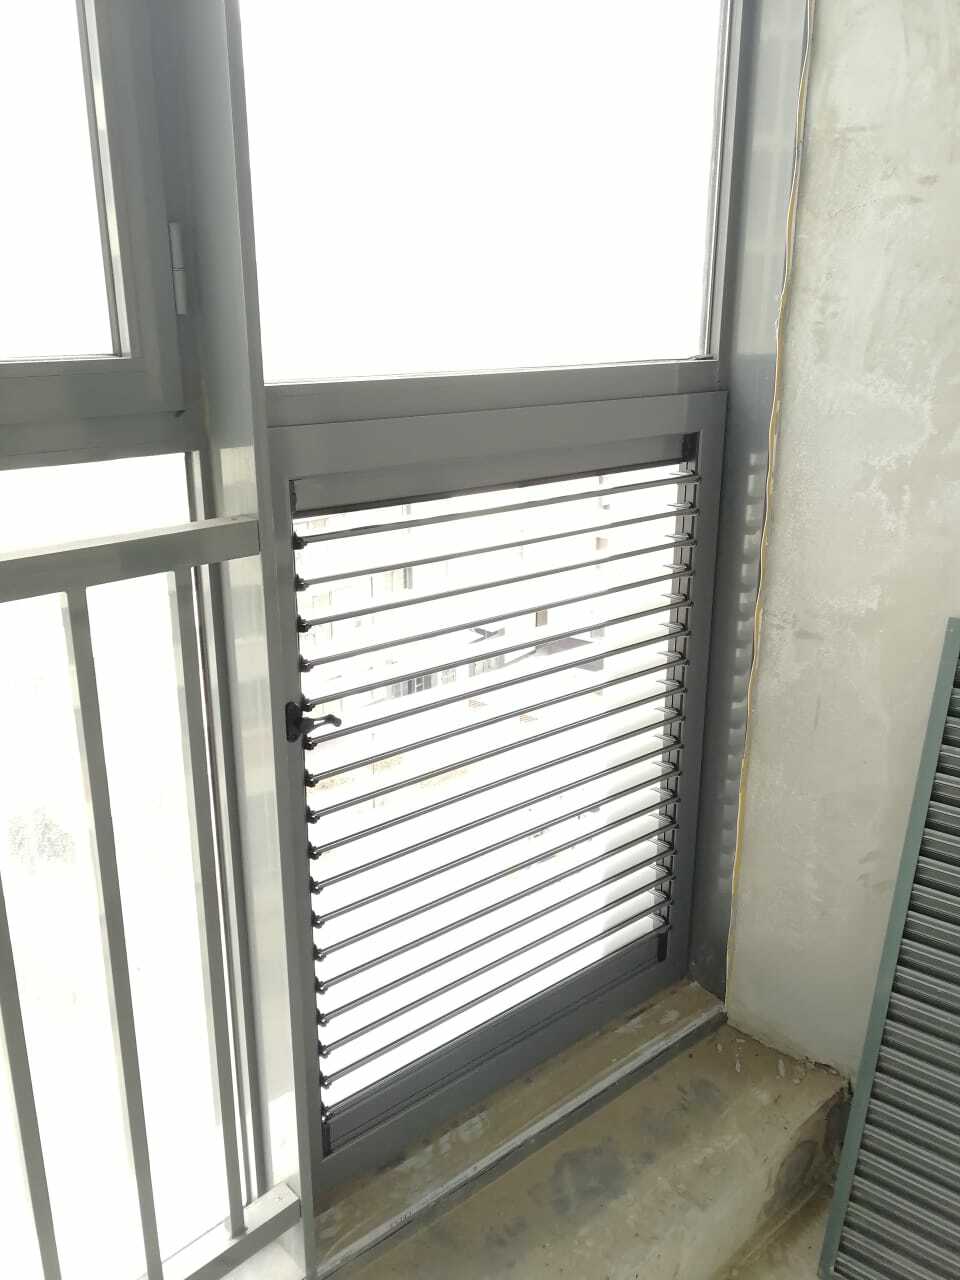 Не знаете как заменить вентиляционную решетку на балконе? Установите вентставни! Ручная регулировка ламелей - повертите ручку, чтобы открыть или закрыть жалюзи. Герметично. Шумоизоляция.